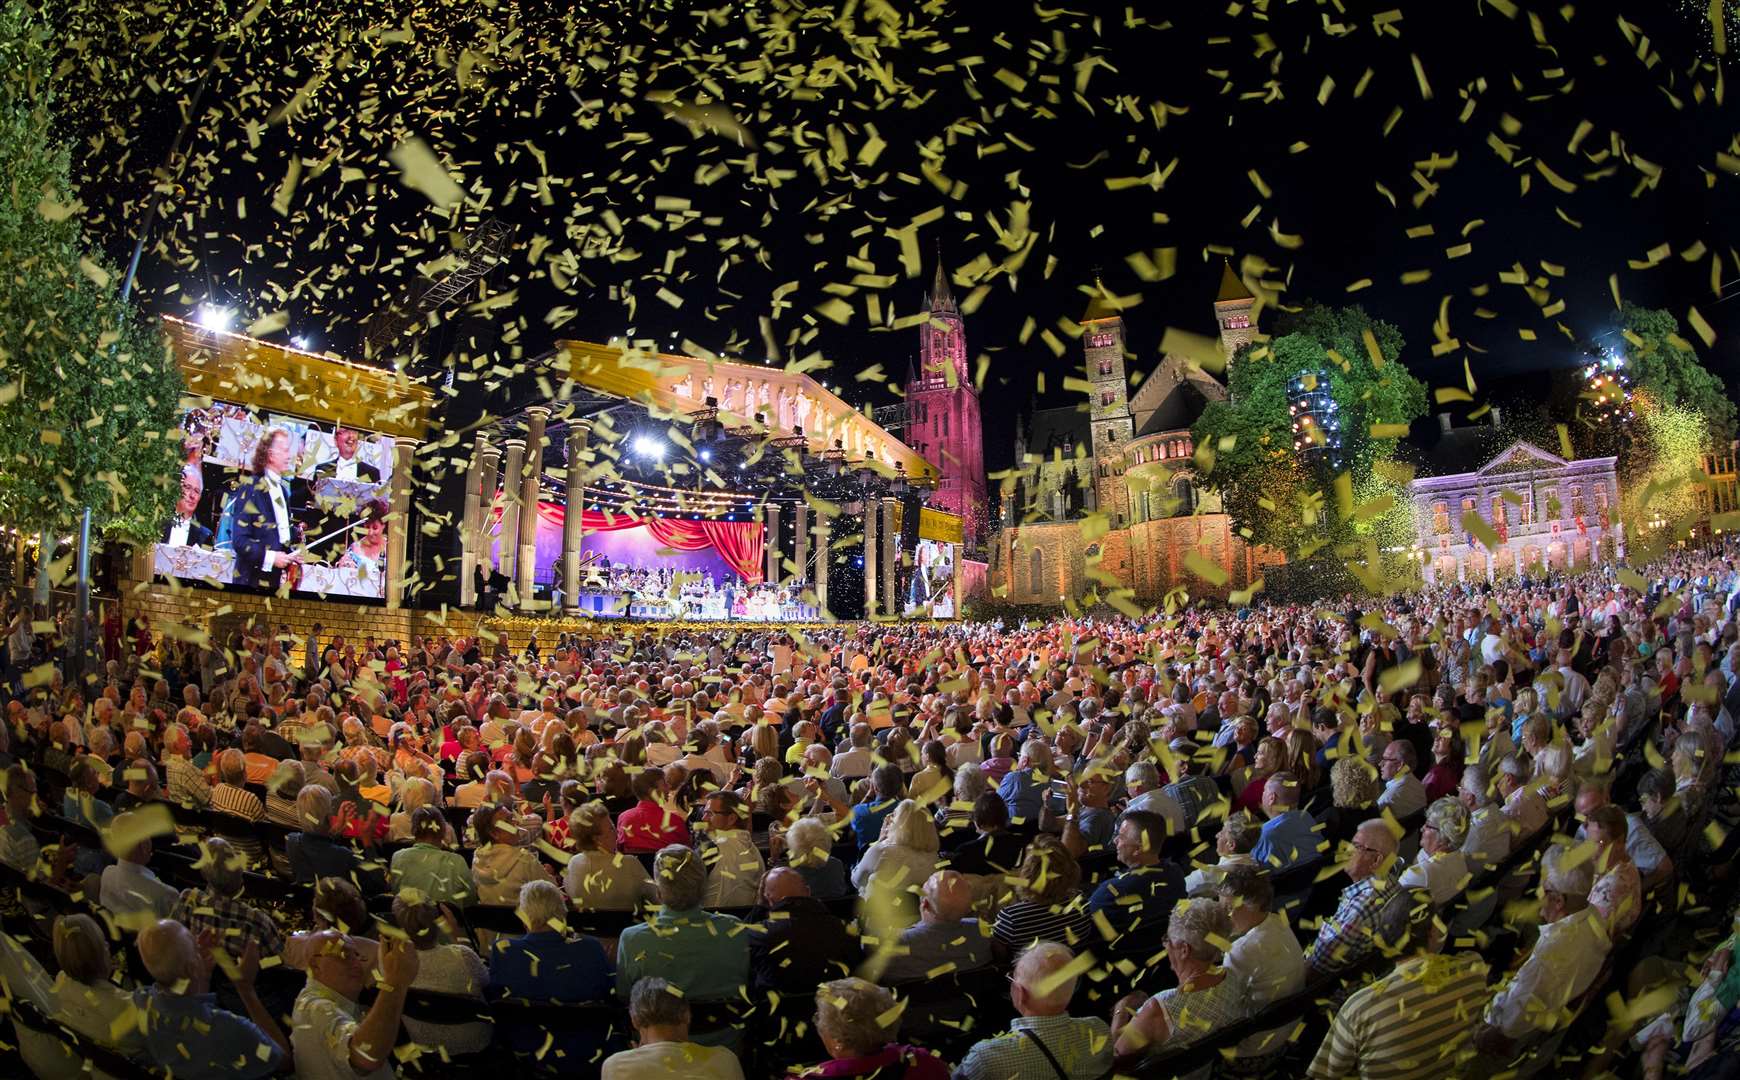 Andre's annual Maastricht concert is seen by thousands. Pictrue: Marcel van Hoorn